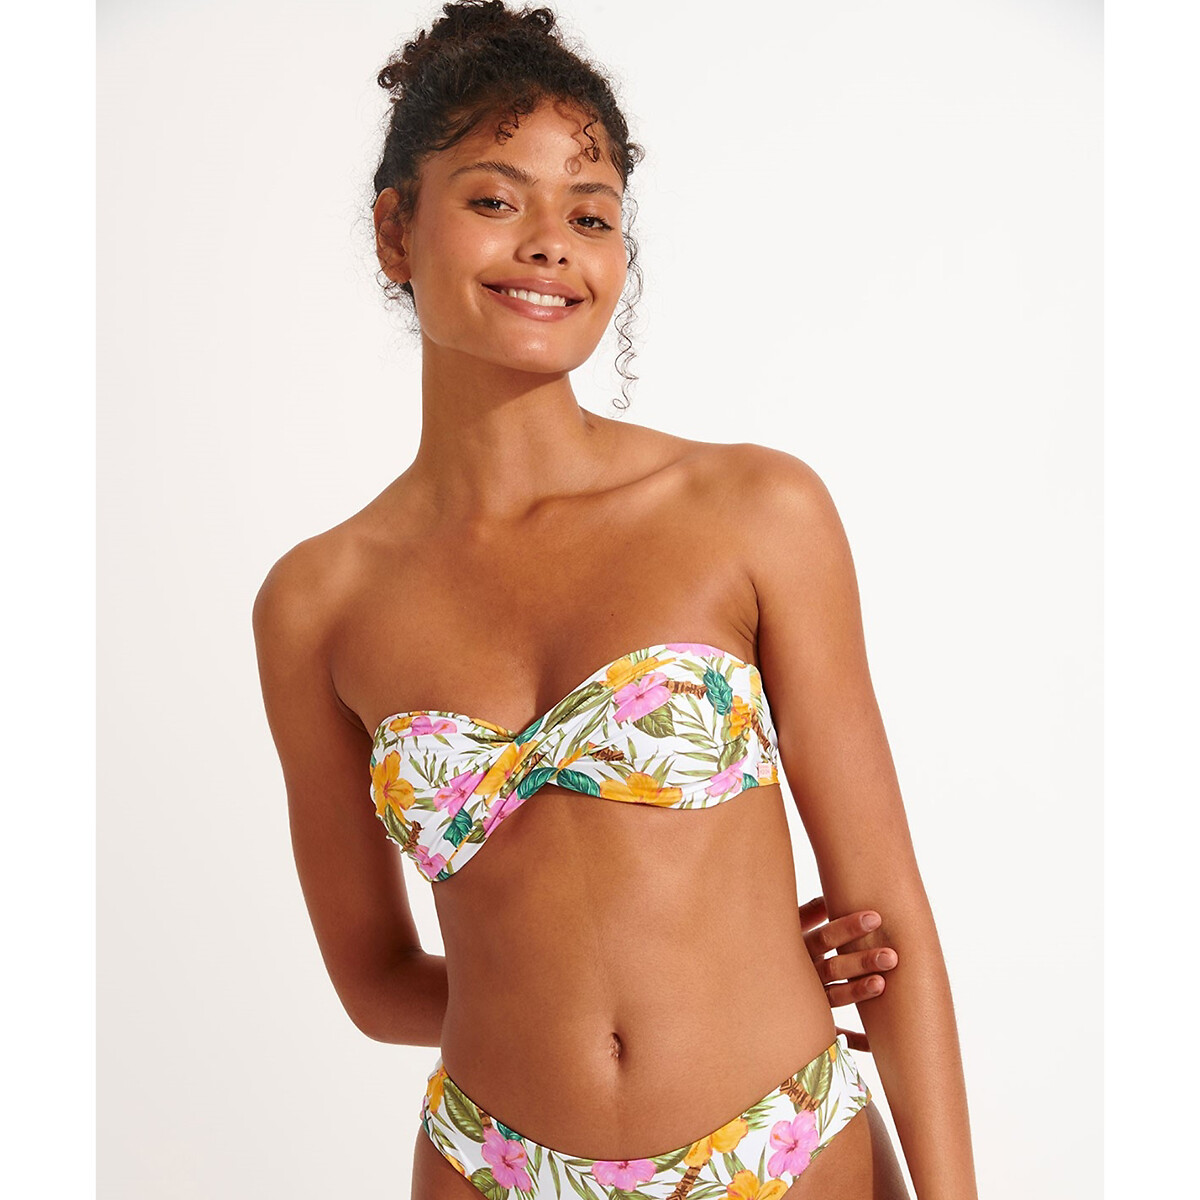 Boro Tortuga Bandeau Bikini Top in Floral Top